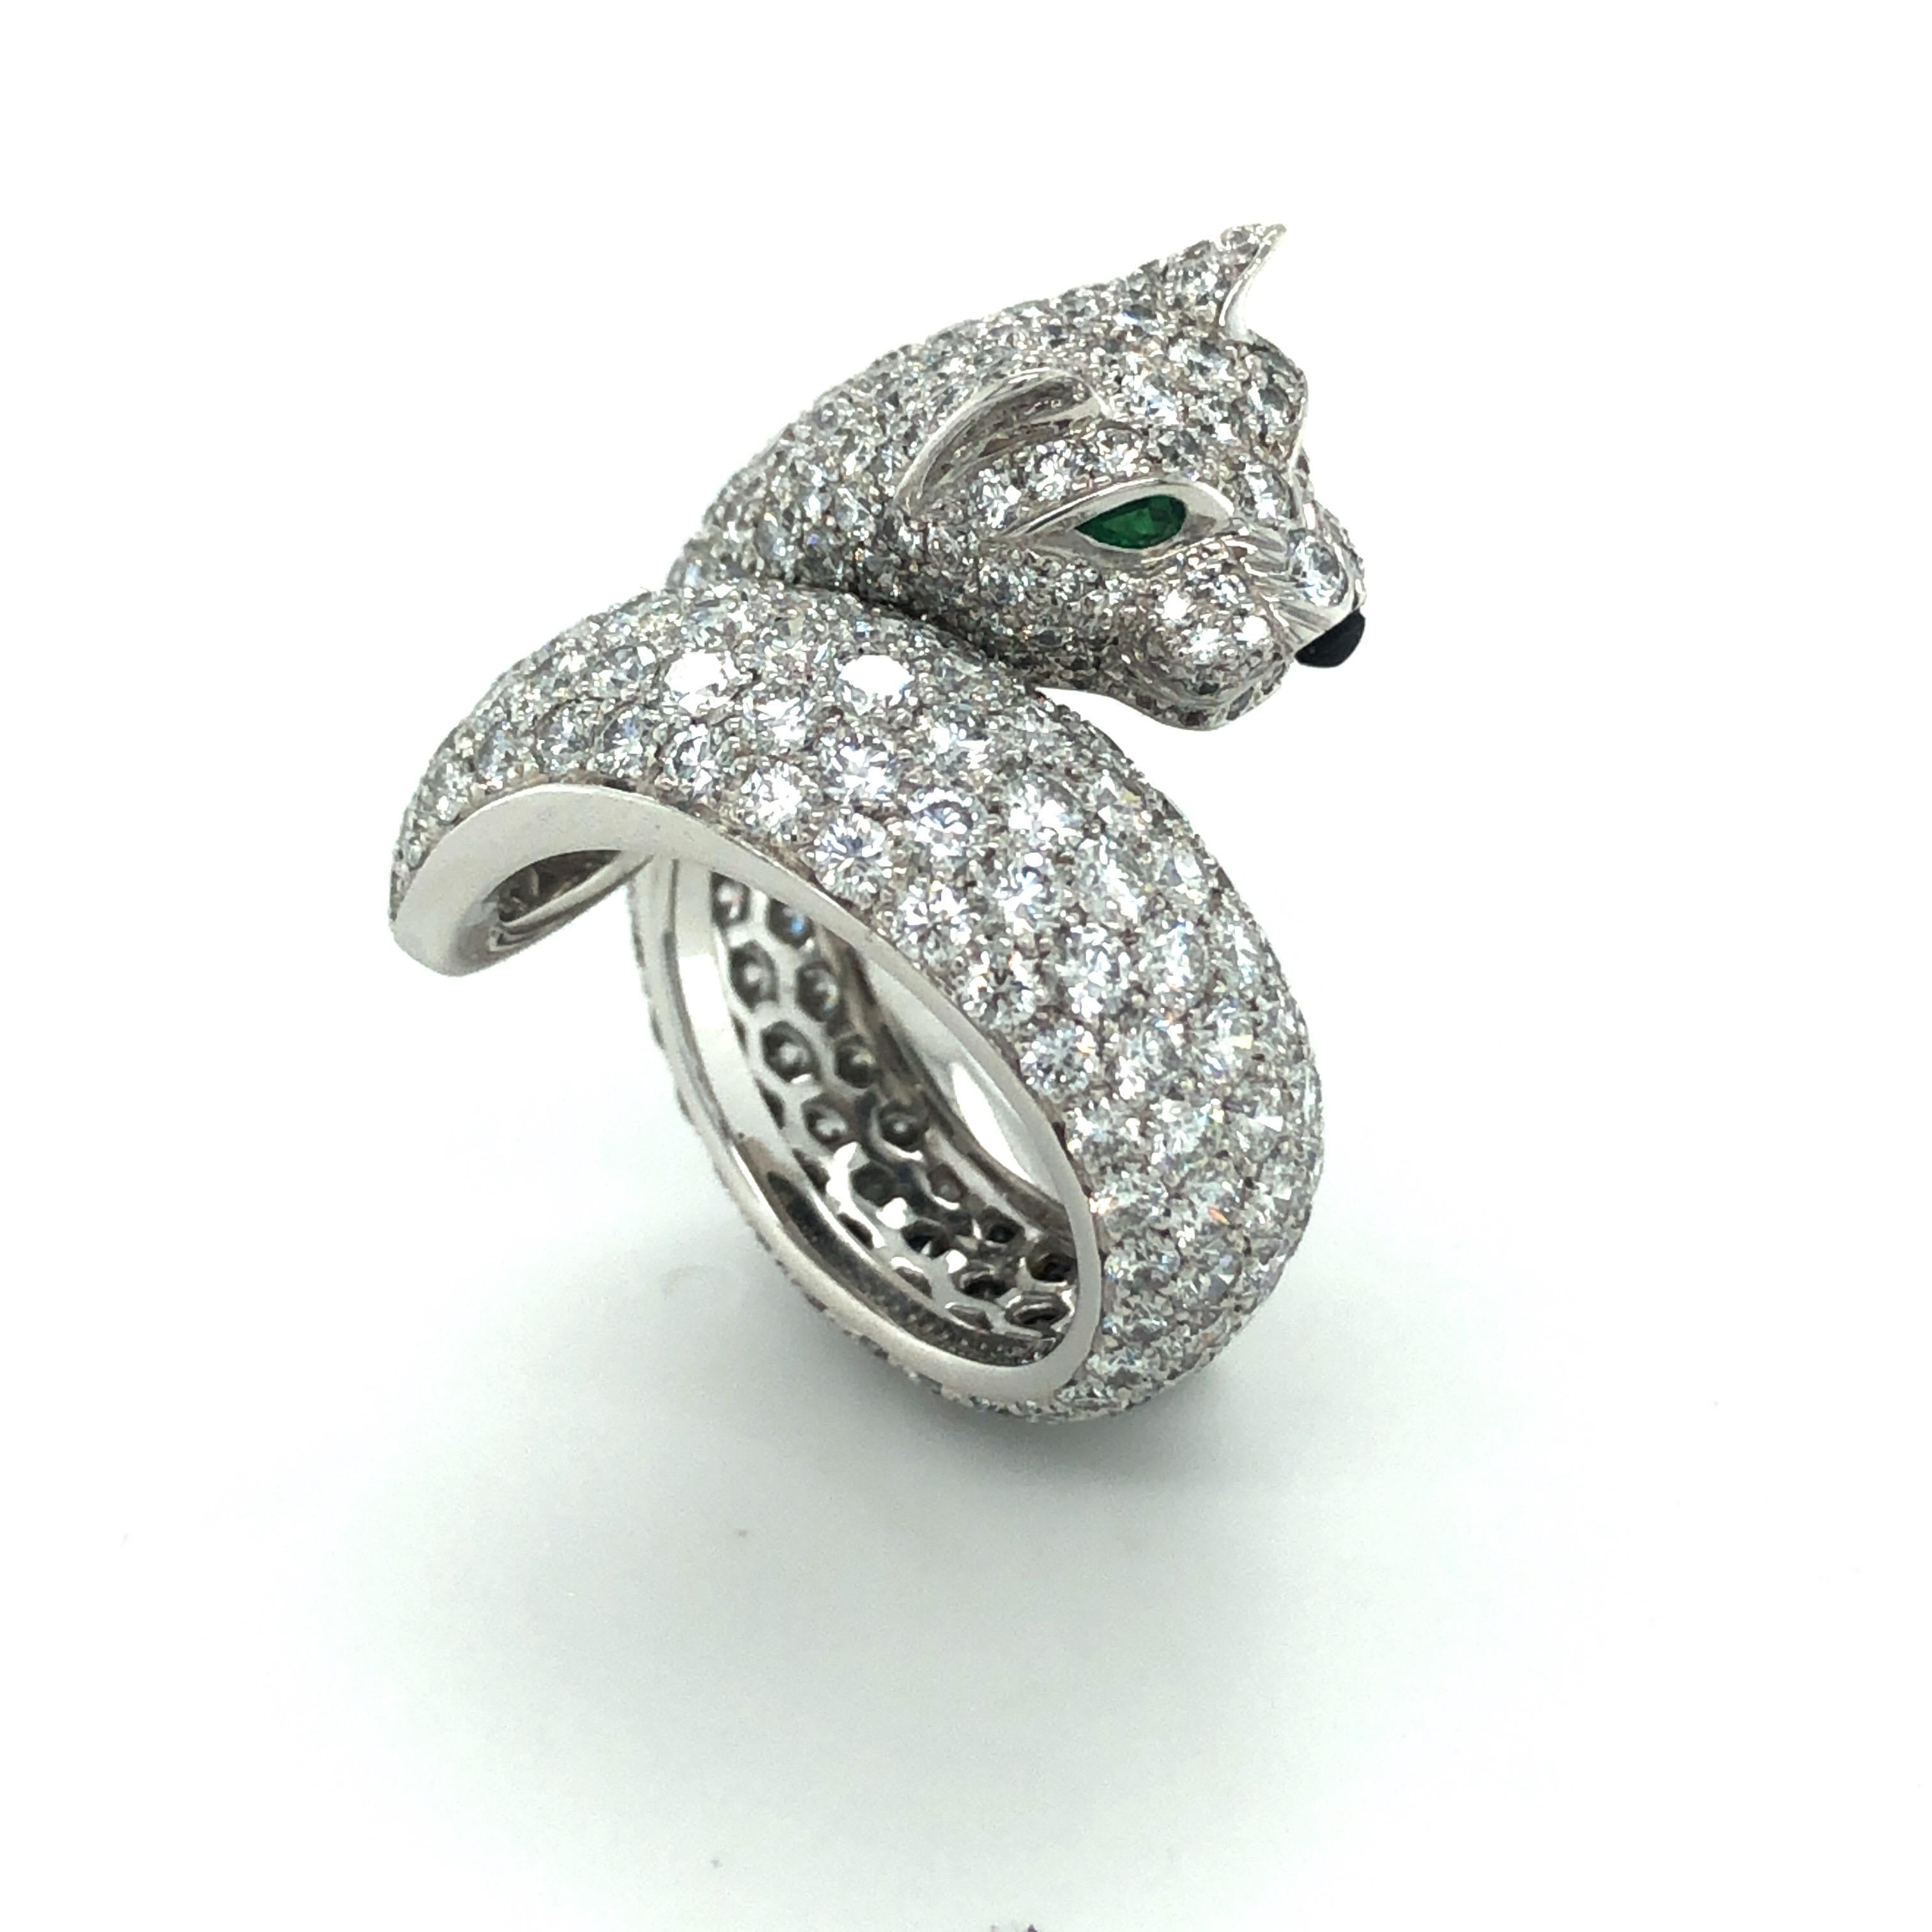 Prachtvoller Cartier Smaragd Onyx Diamant 18 Karat Weißgold Lakarda Panthere Ring.

Dieser spektakuläre Ring windet sich um den Finger und zeigt das ikonischste Geschöpf der Maison, den Panther. Er ist aus 18 Karat Weißgold gefertigt und vollständig